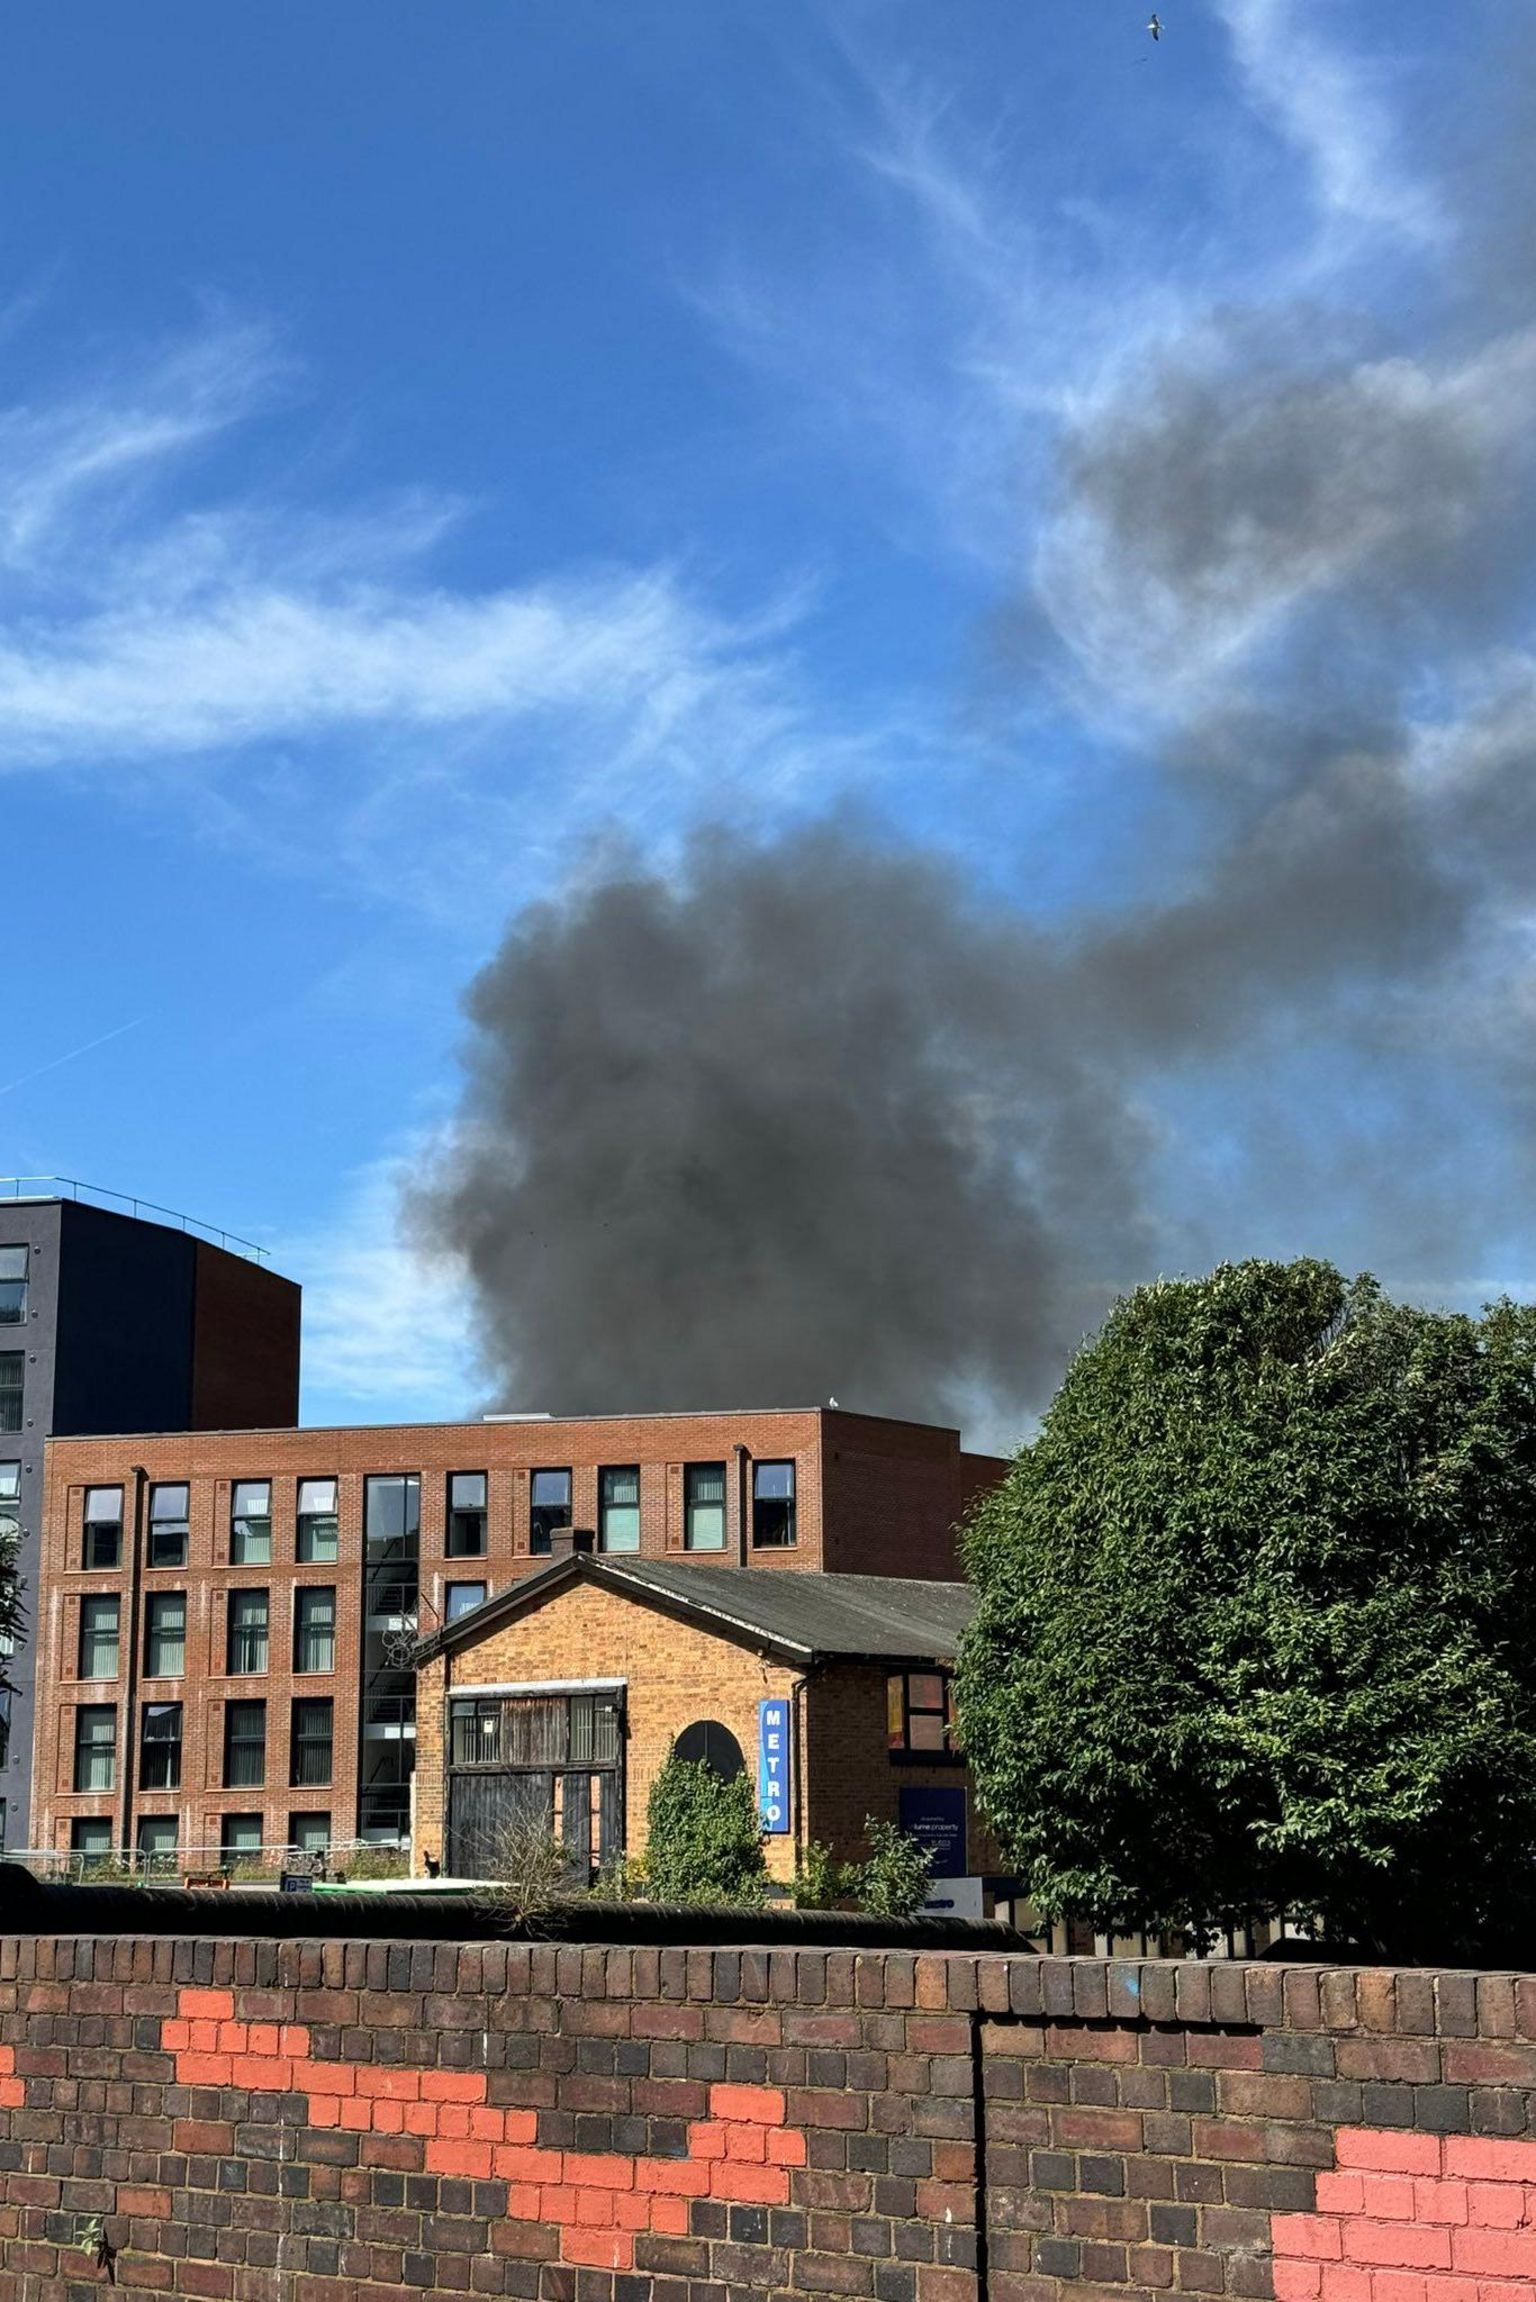 Smoke from a fire in Aston, Birmingham